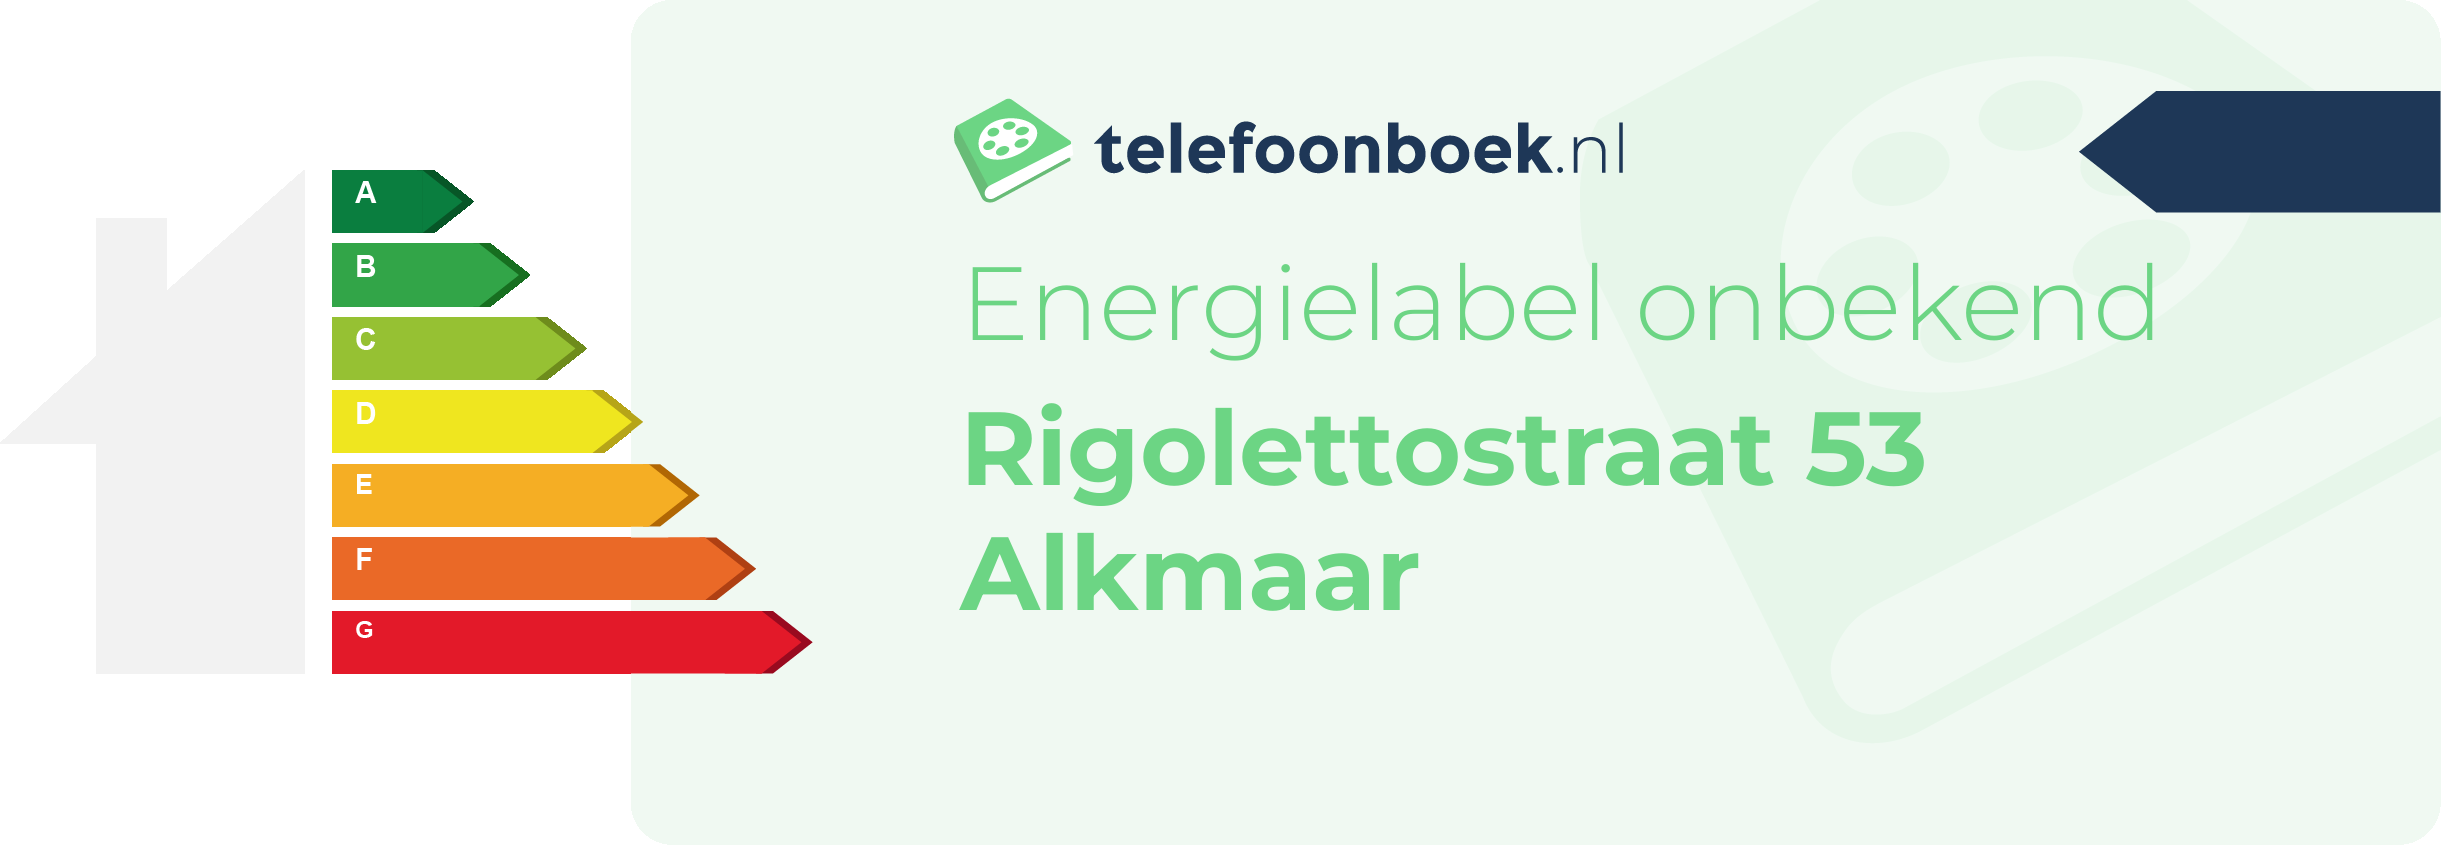 Energielabel Rigolettostraat 53 Alkmaar